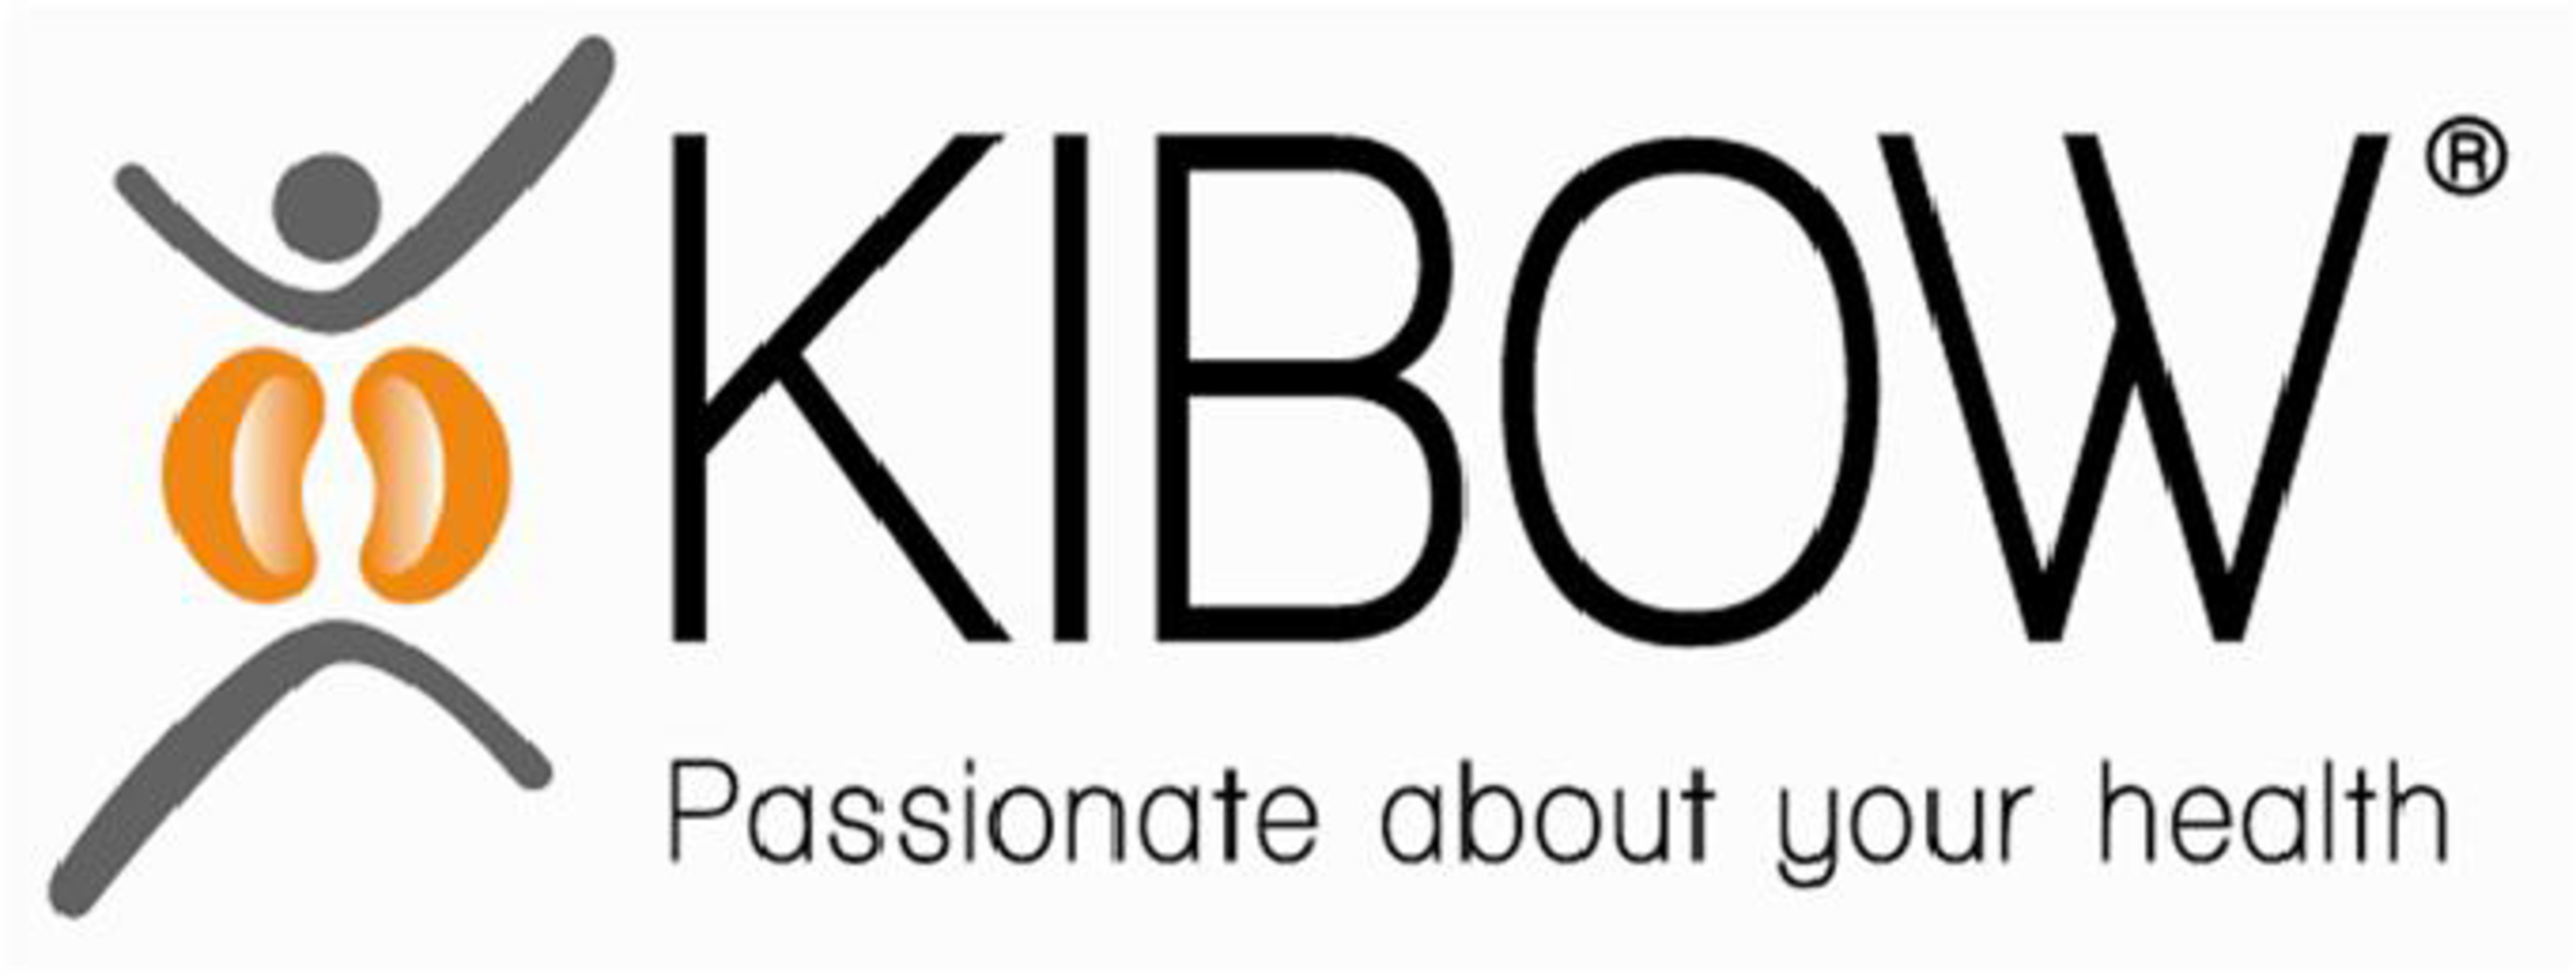 Kibow - logo. (PRNewsFoto/Kibow Biotech, Inc.) (PRNewsFoto/KIBOW BIOTECH, INC.)